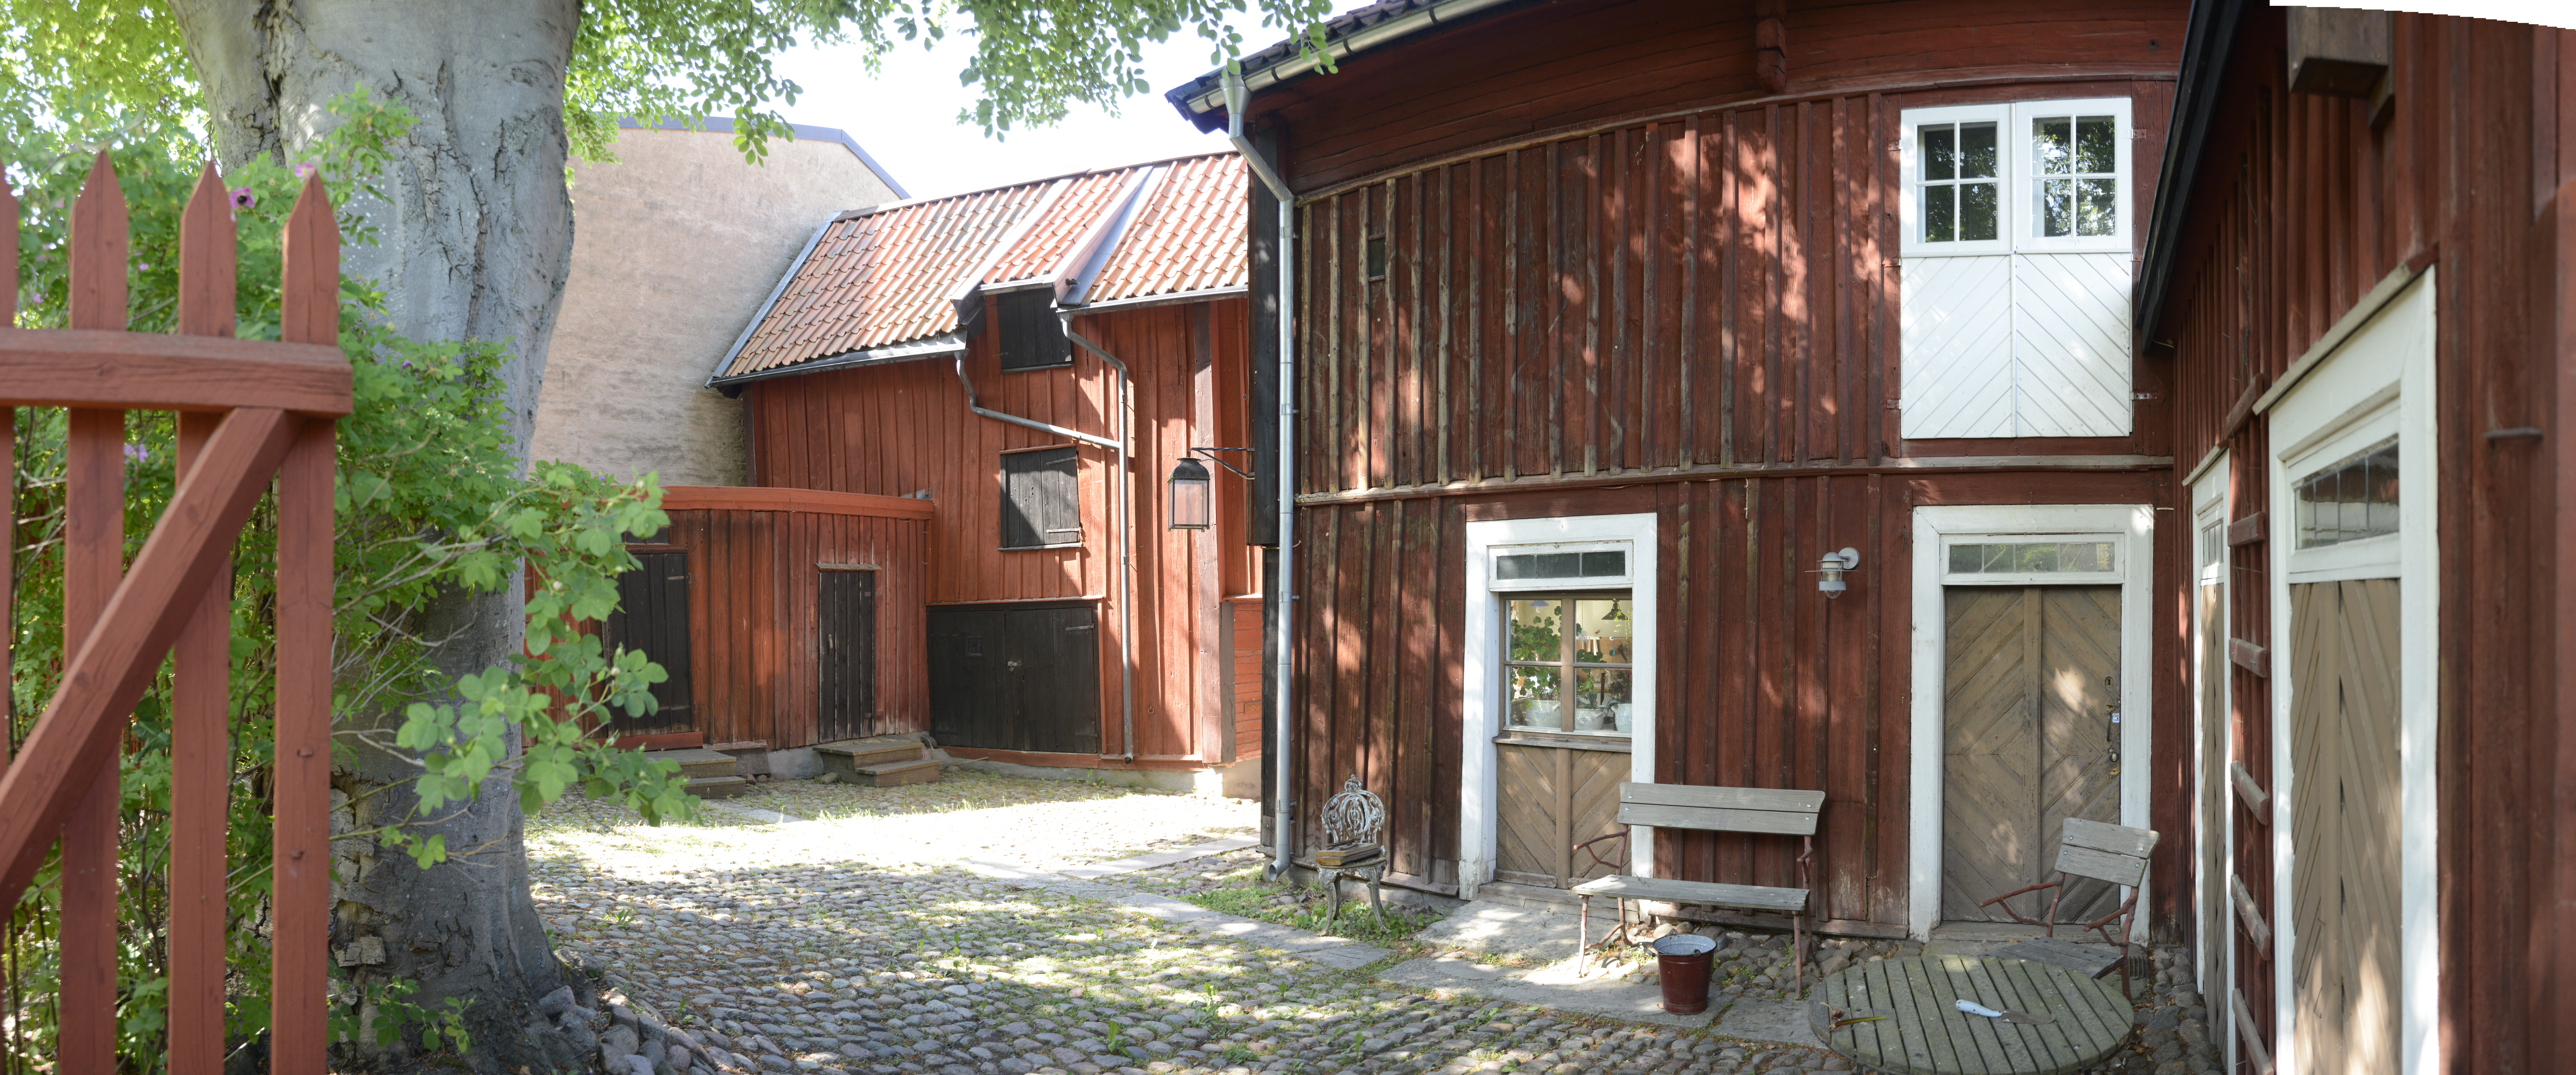 Onkel Adamsgården i Linköping, exteriör, innergården med uthus i forn av röda trähus. 